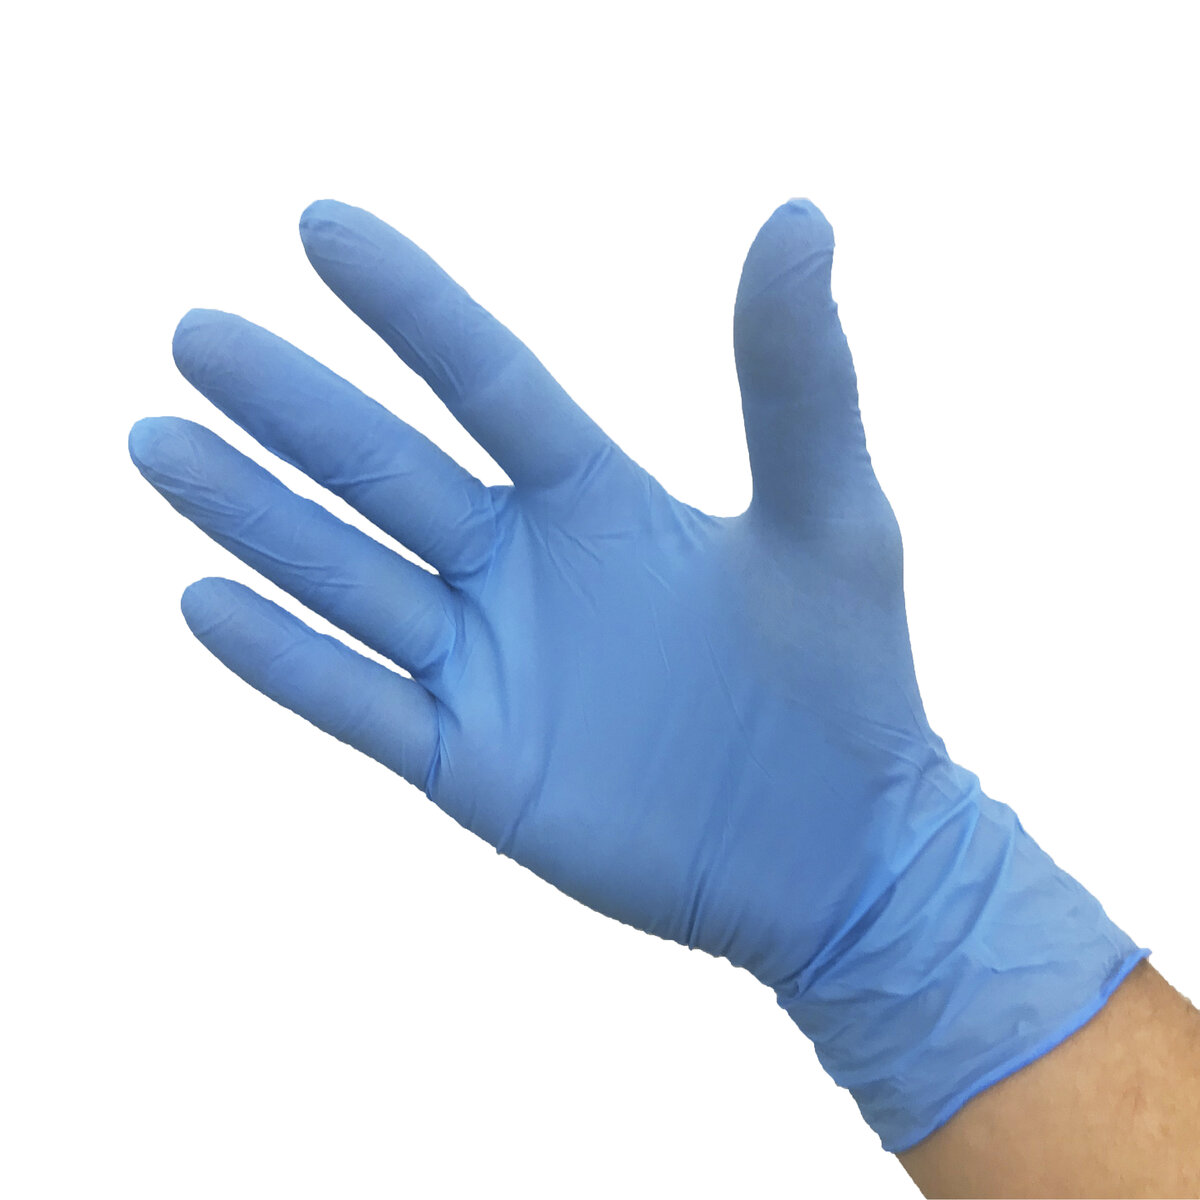 公式】パーマンショップ-ニトリルゴム手袋 青色 粉なし S: 身体保護 